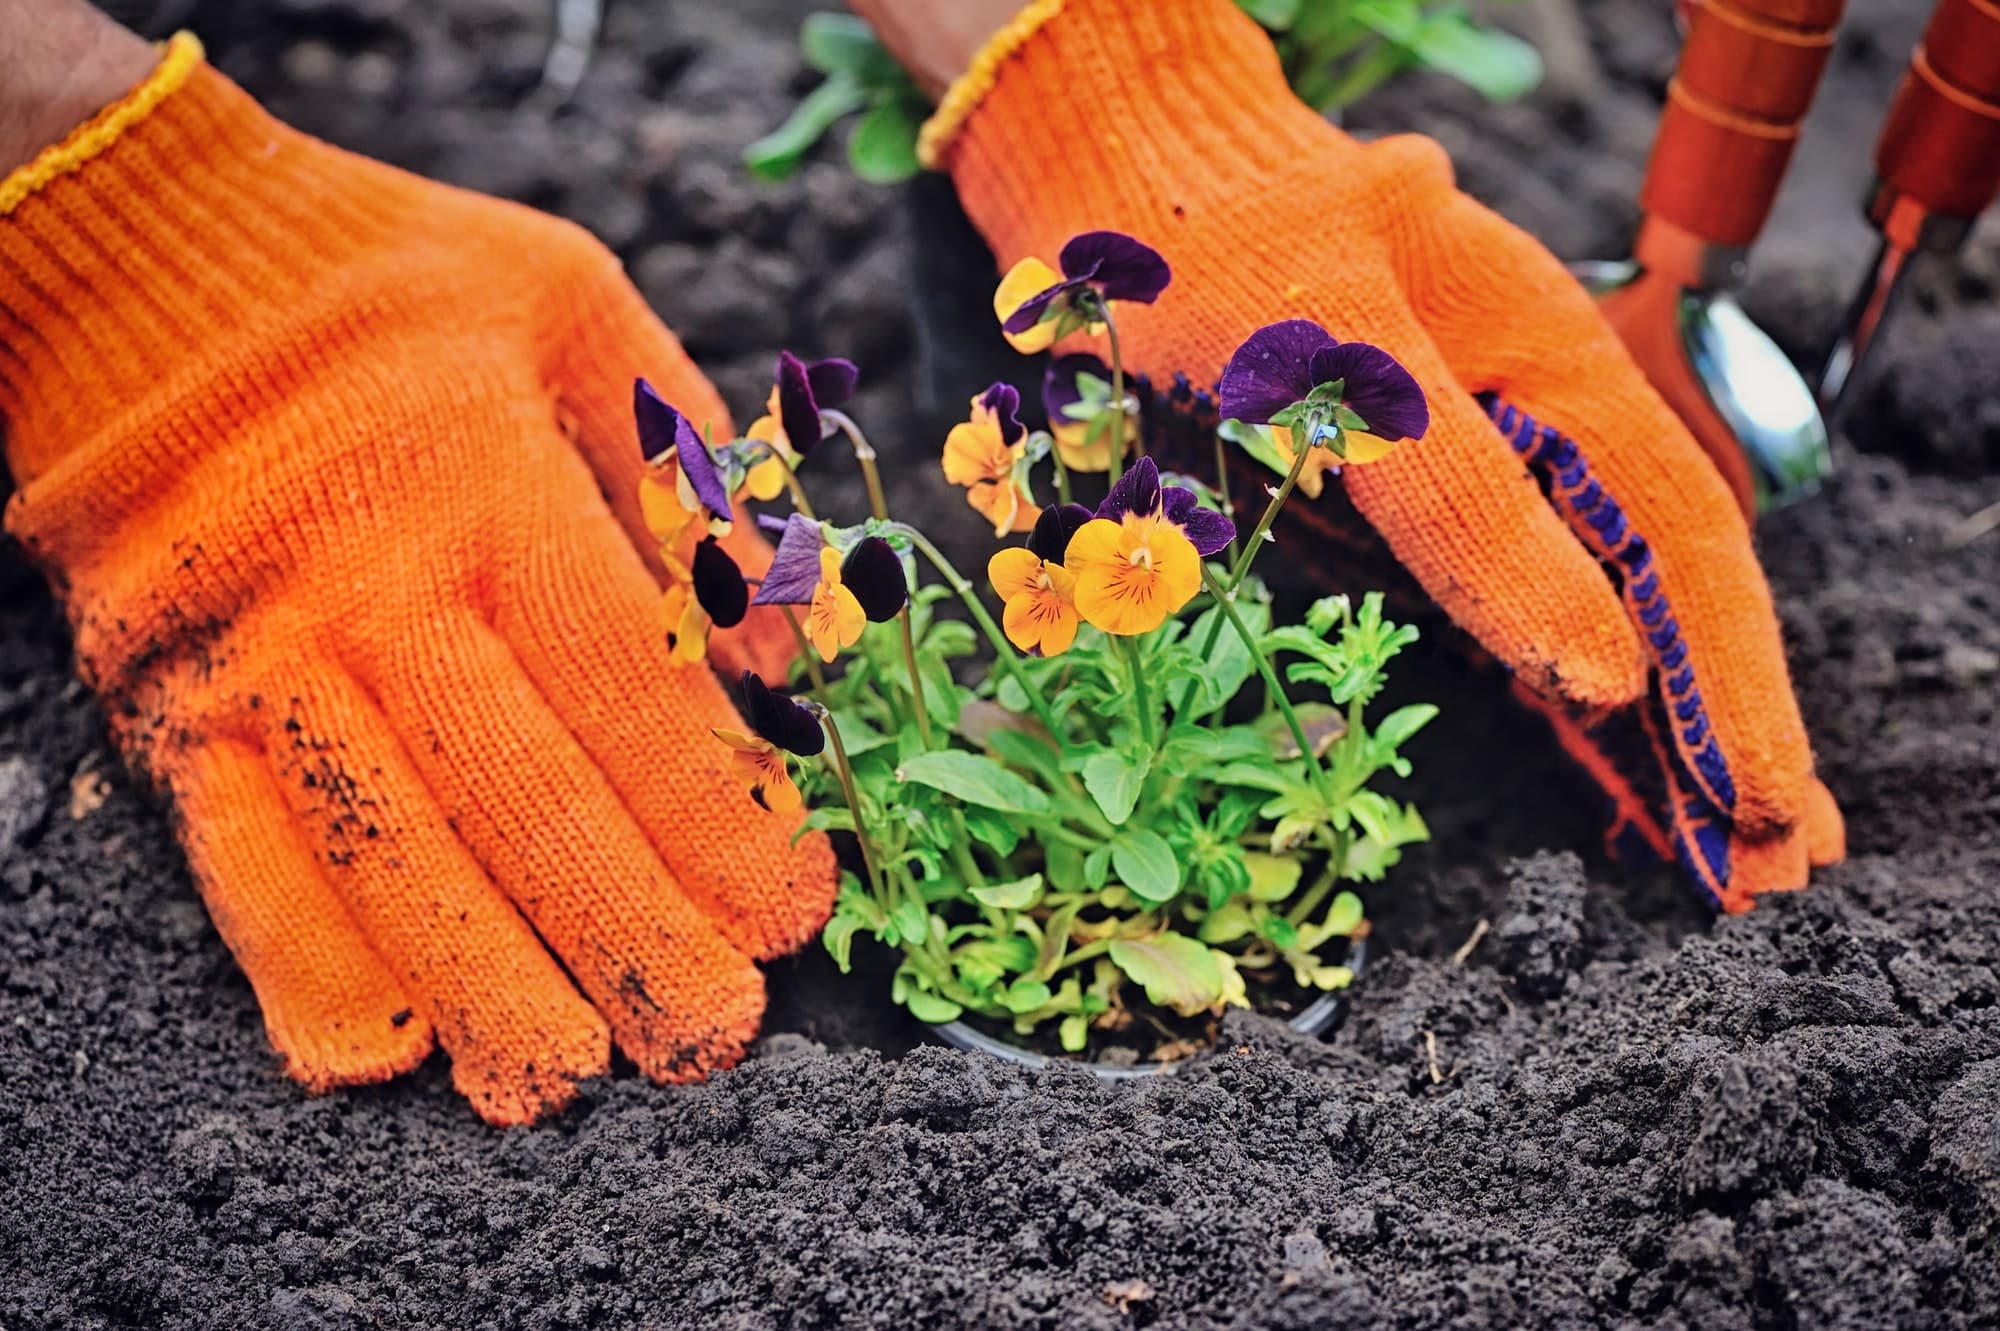 Gardeners hands planting flowers in a garden